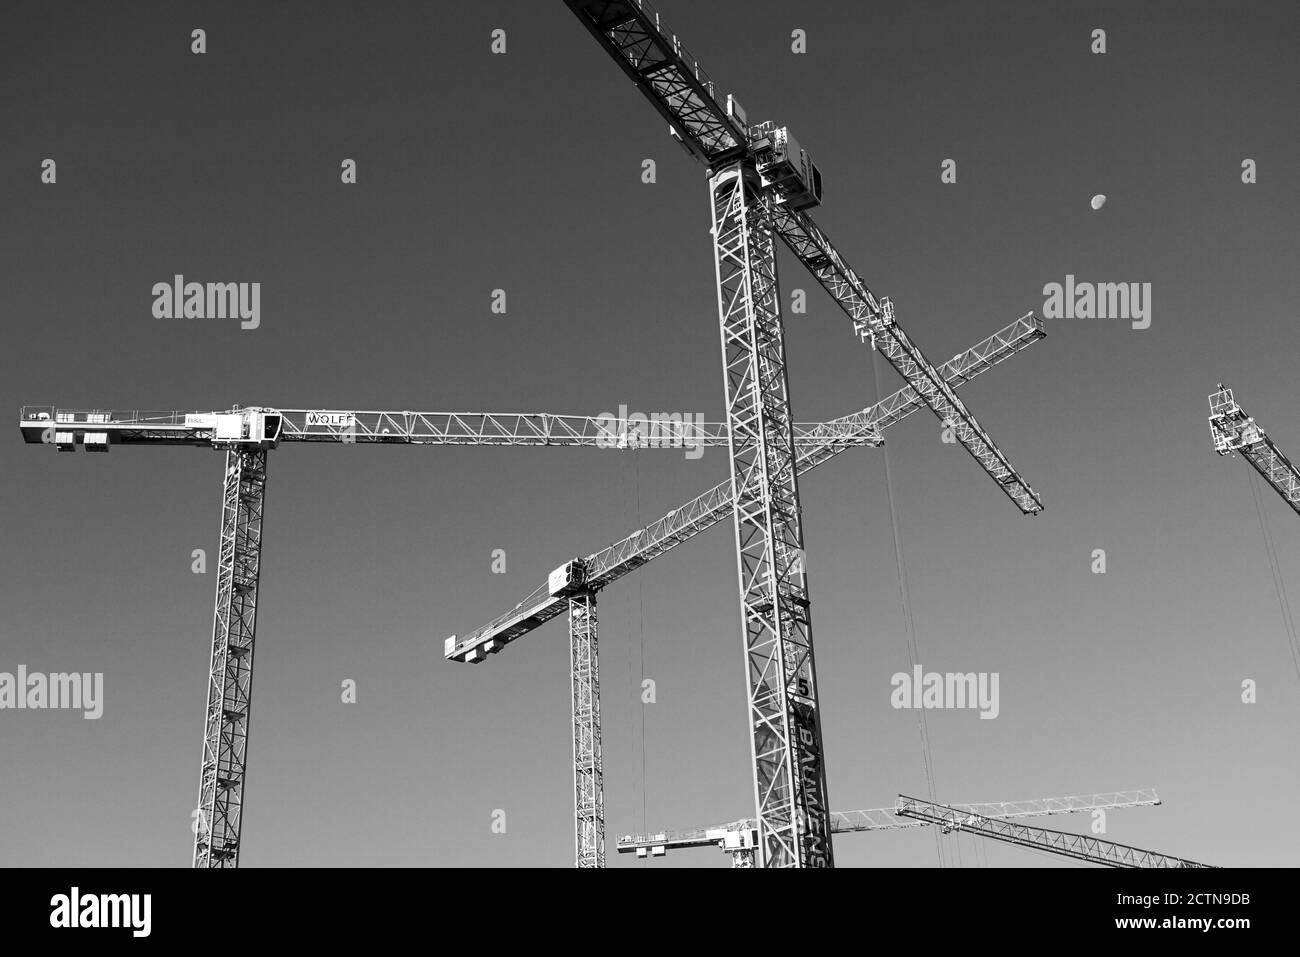 Plusieurs grues de construction sur un site de construction en noir et blanc Banque D'Images